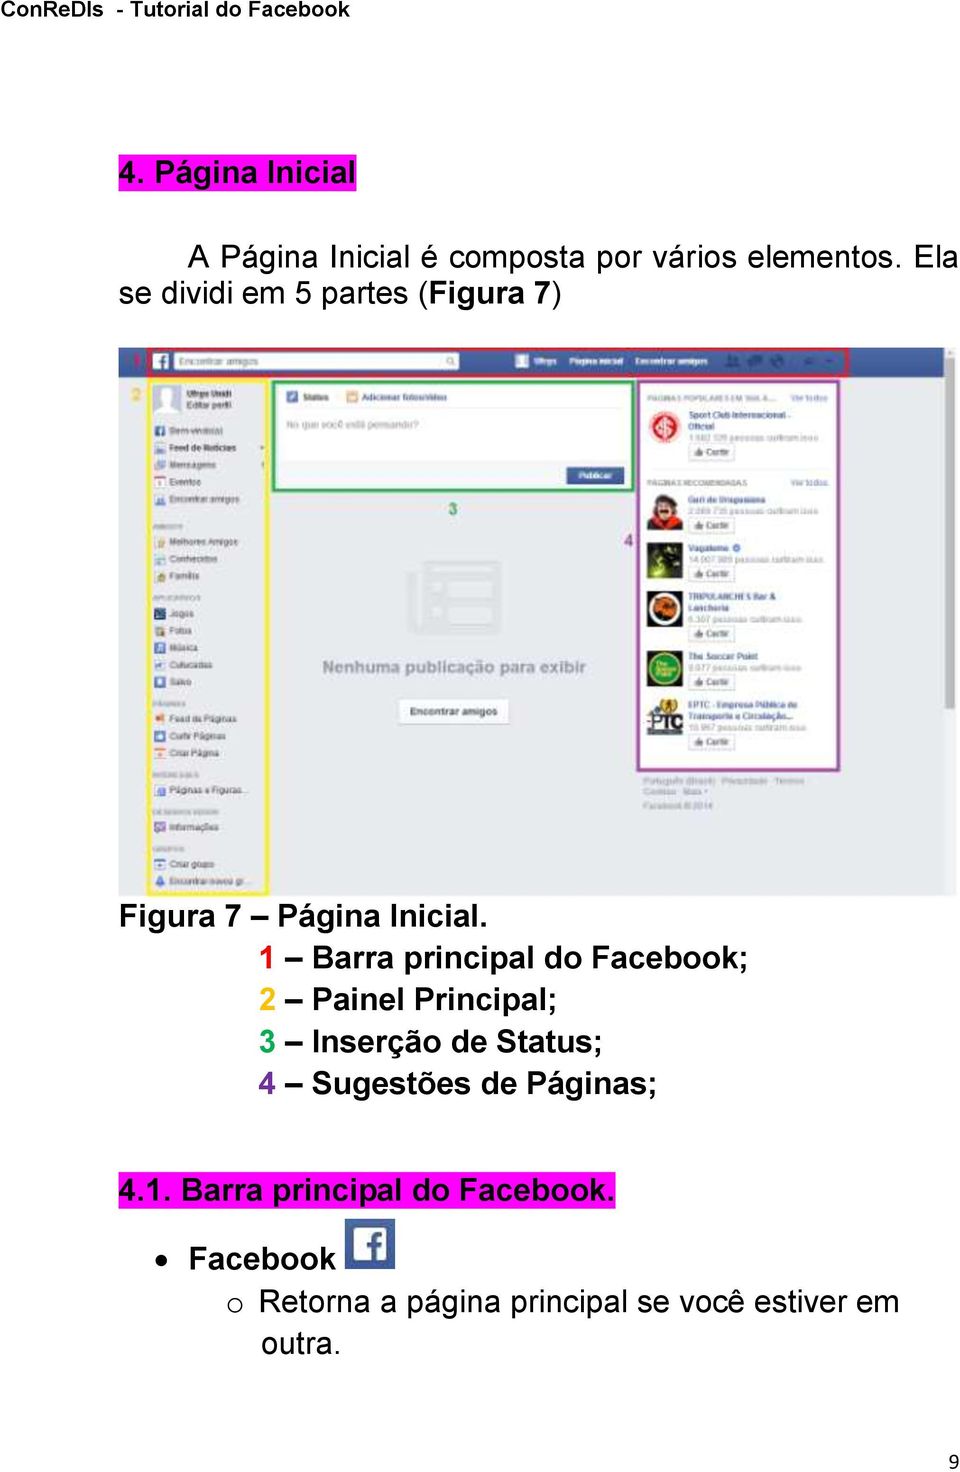 1 Barra principal do Facebook; 2 Painel Principal; 3 Inserção de Status; 4